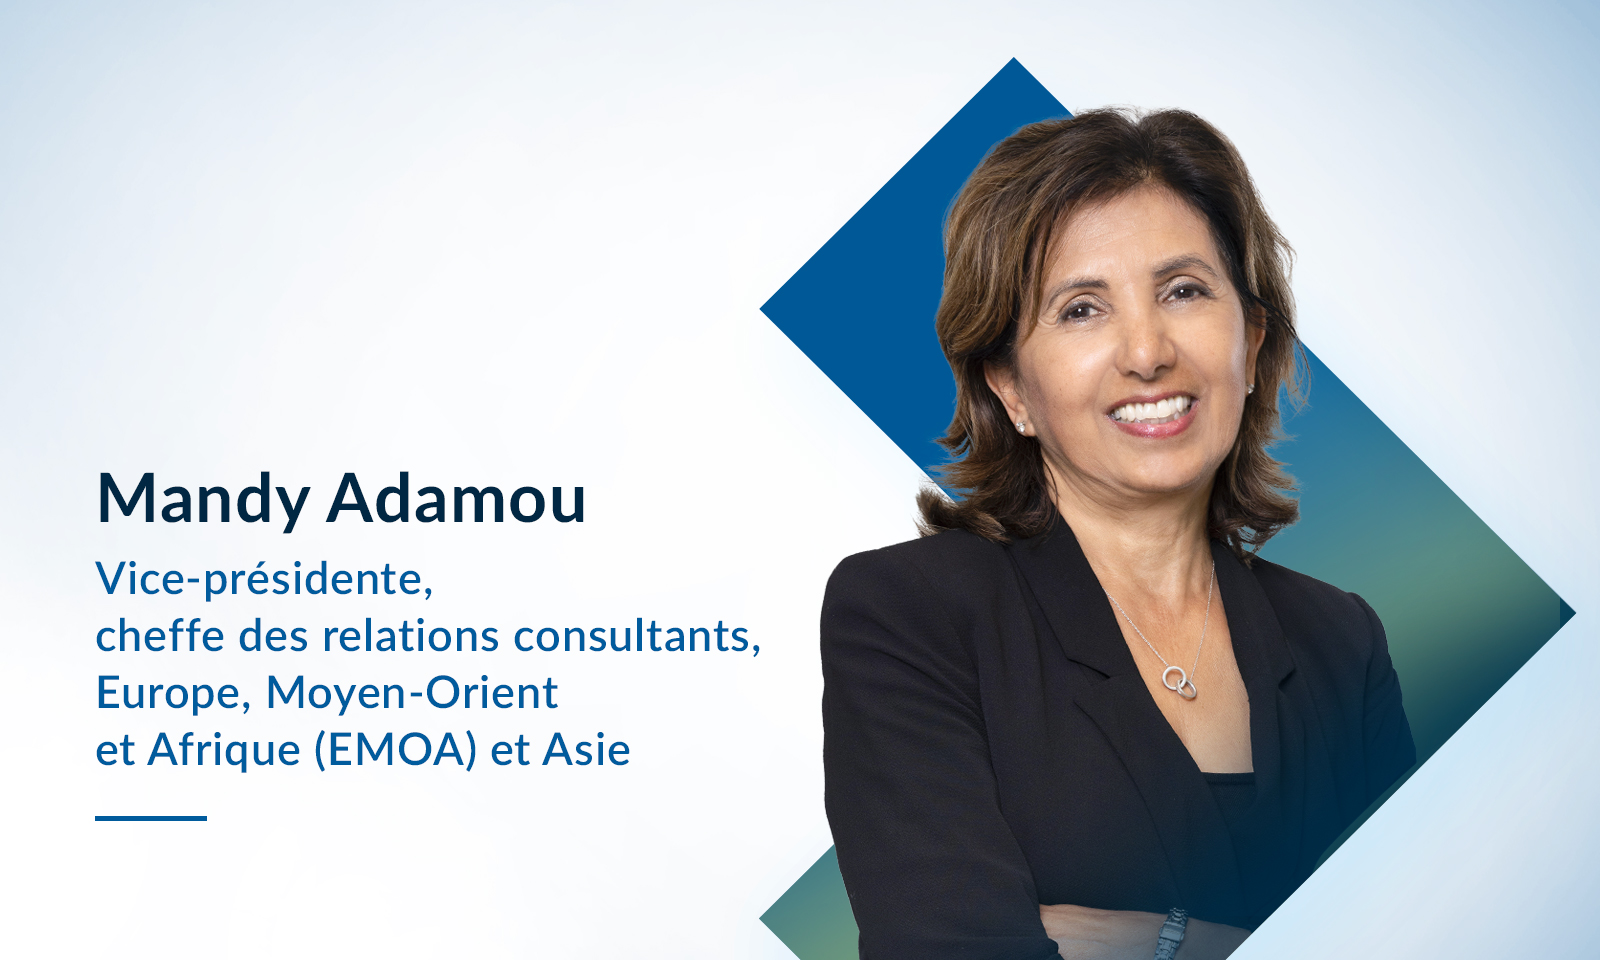 Fiera Capital nomme Mandy Adamou à titre de vice-présidente, cheffe des relations consultants, EMOA et Asie